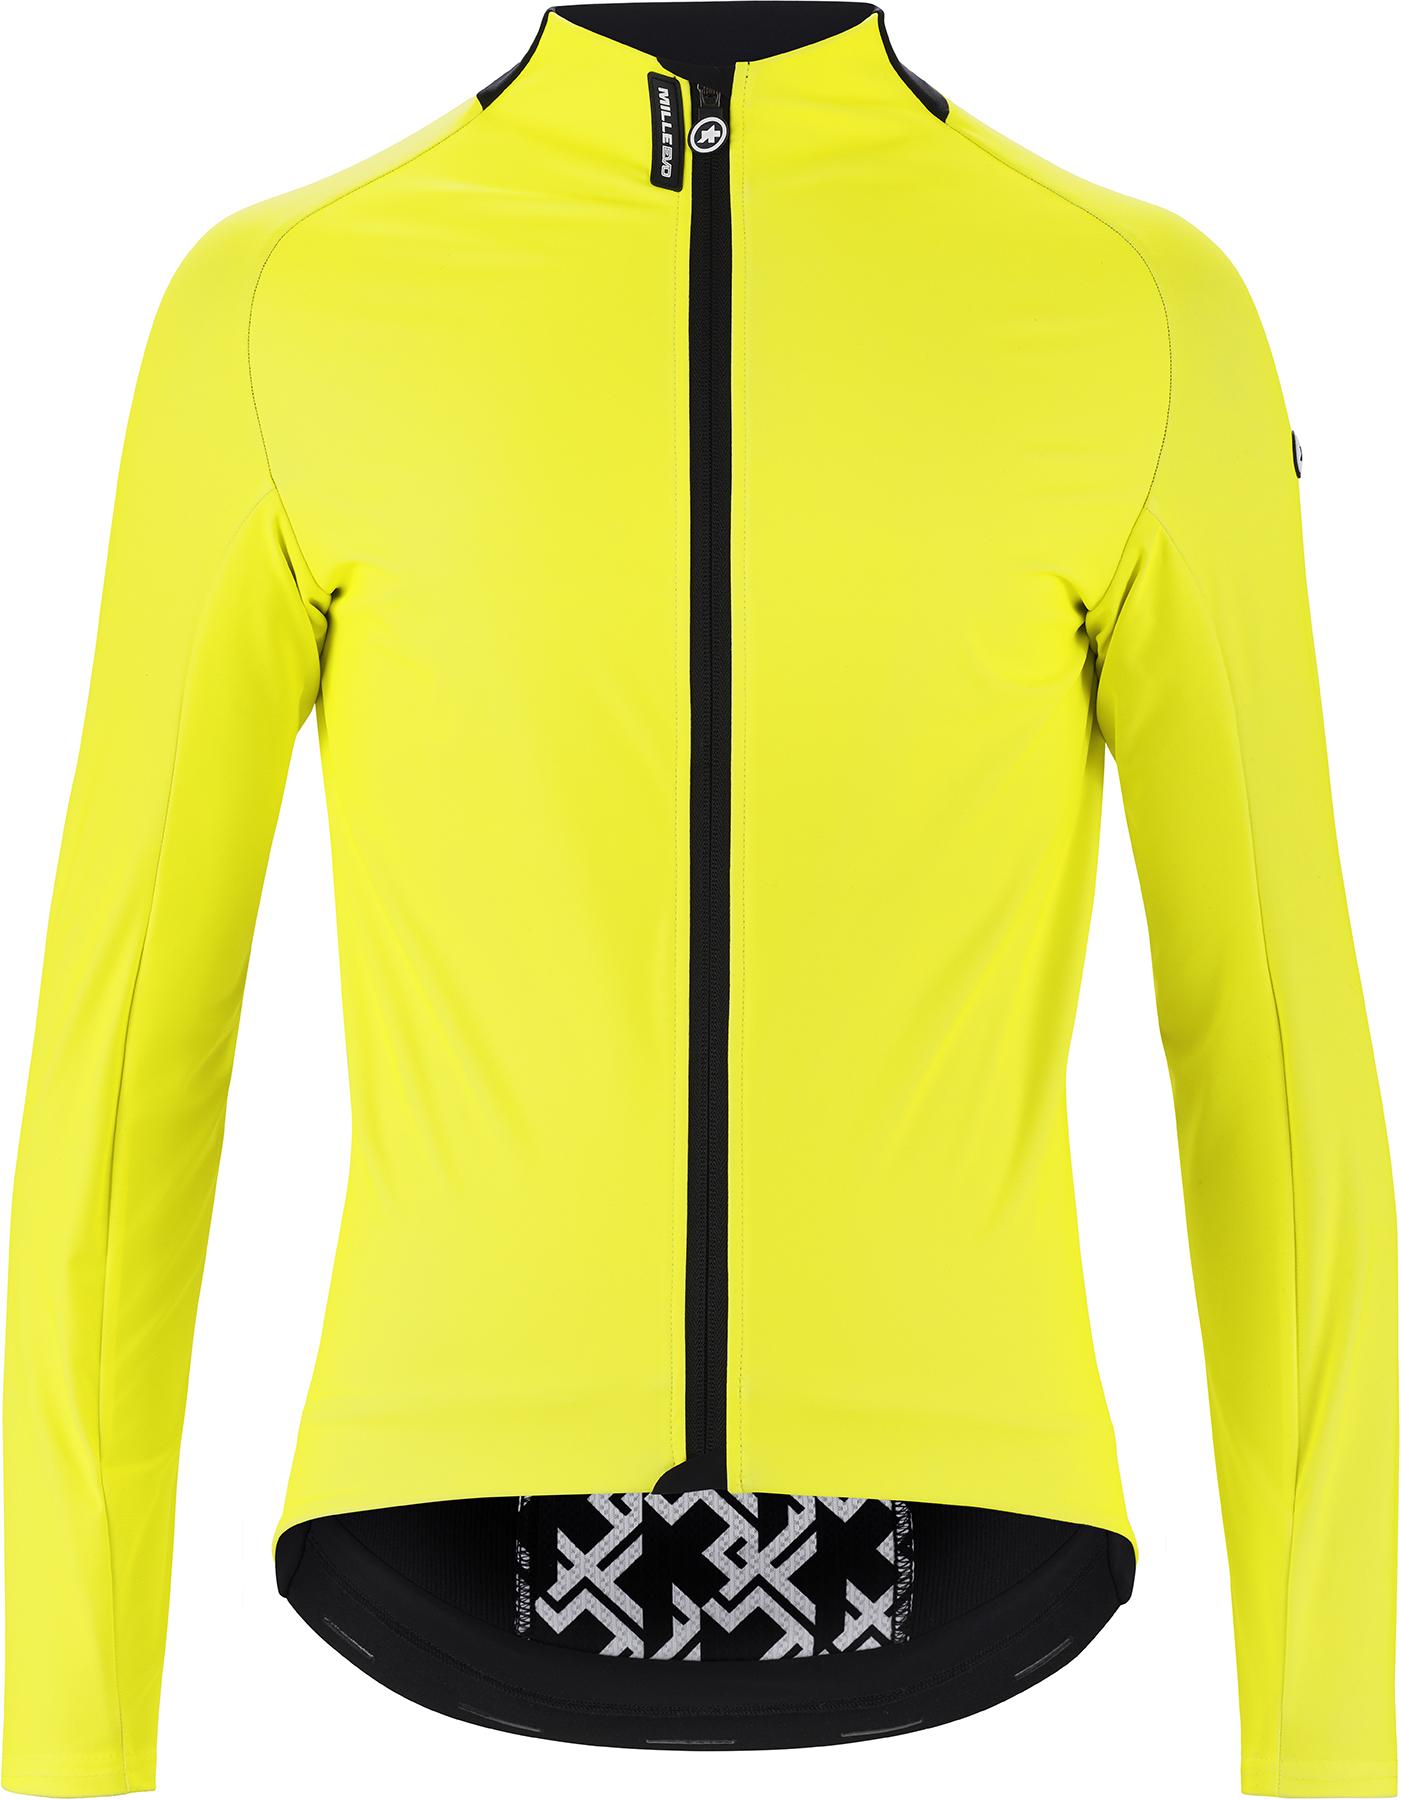 Assos Mille Gt Ultraz Winter Jacket Evo  Fluorescent Yellow